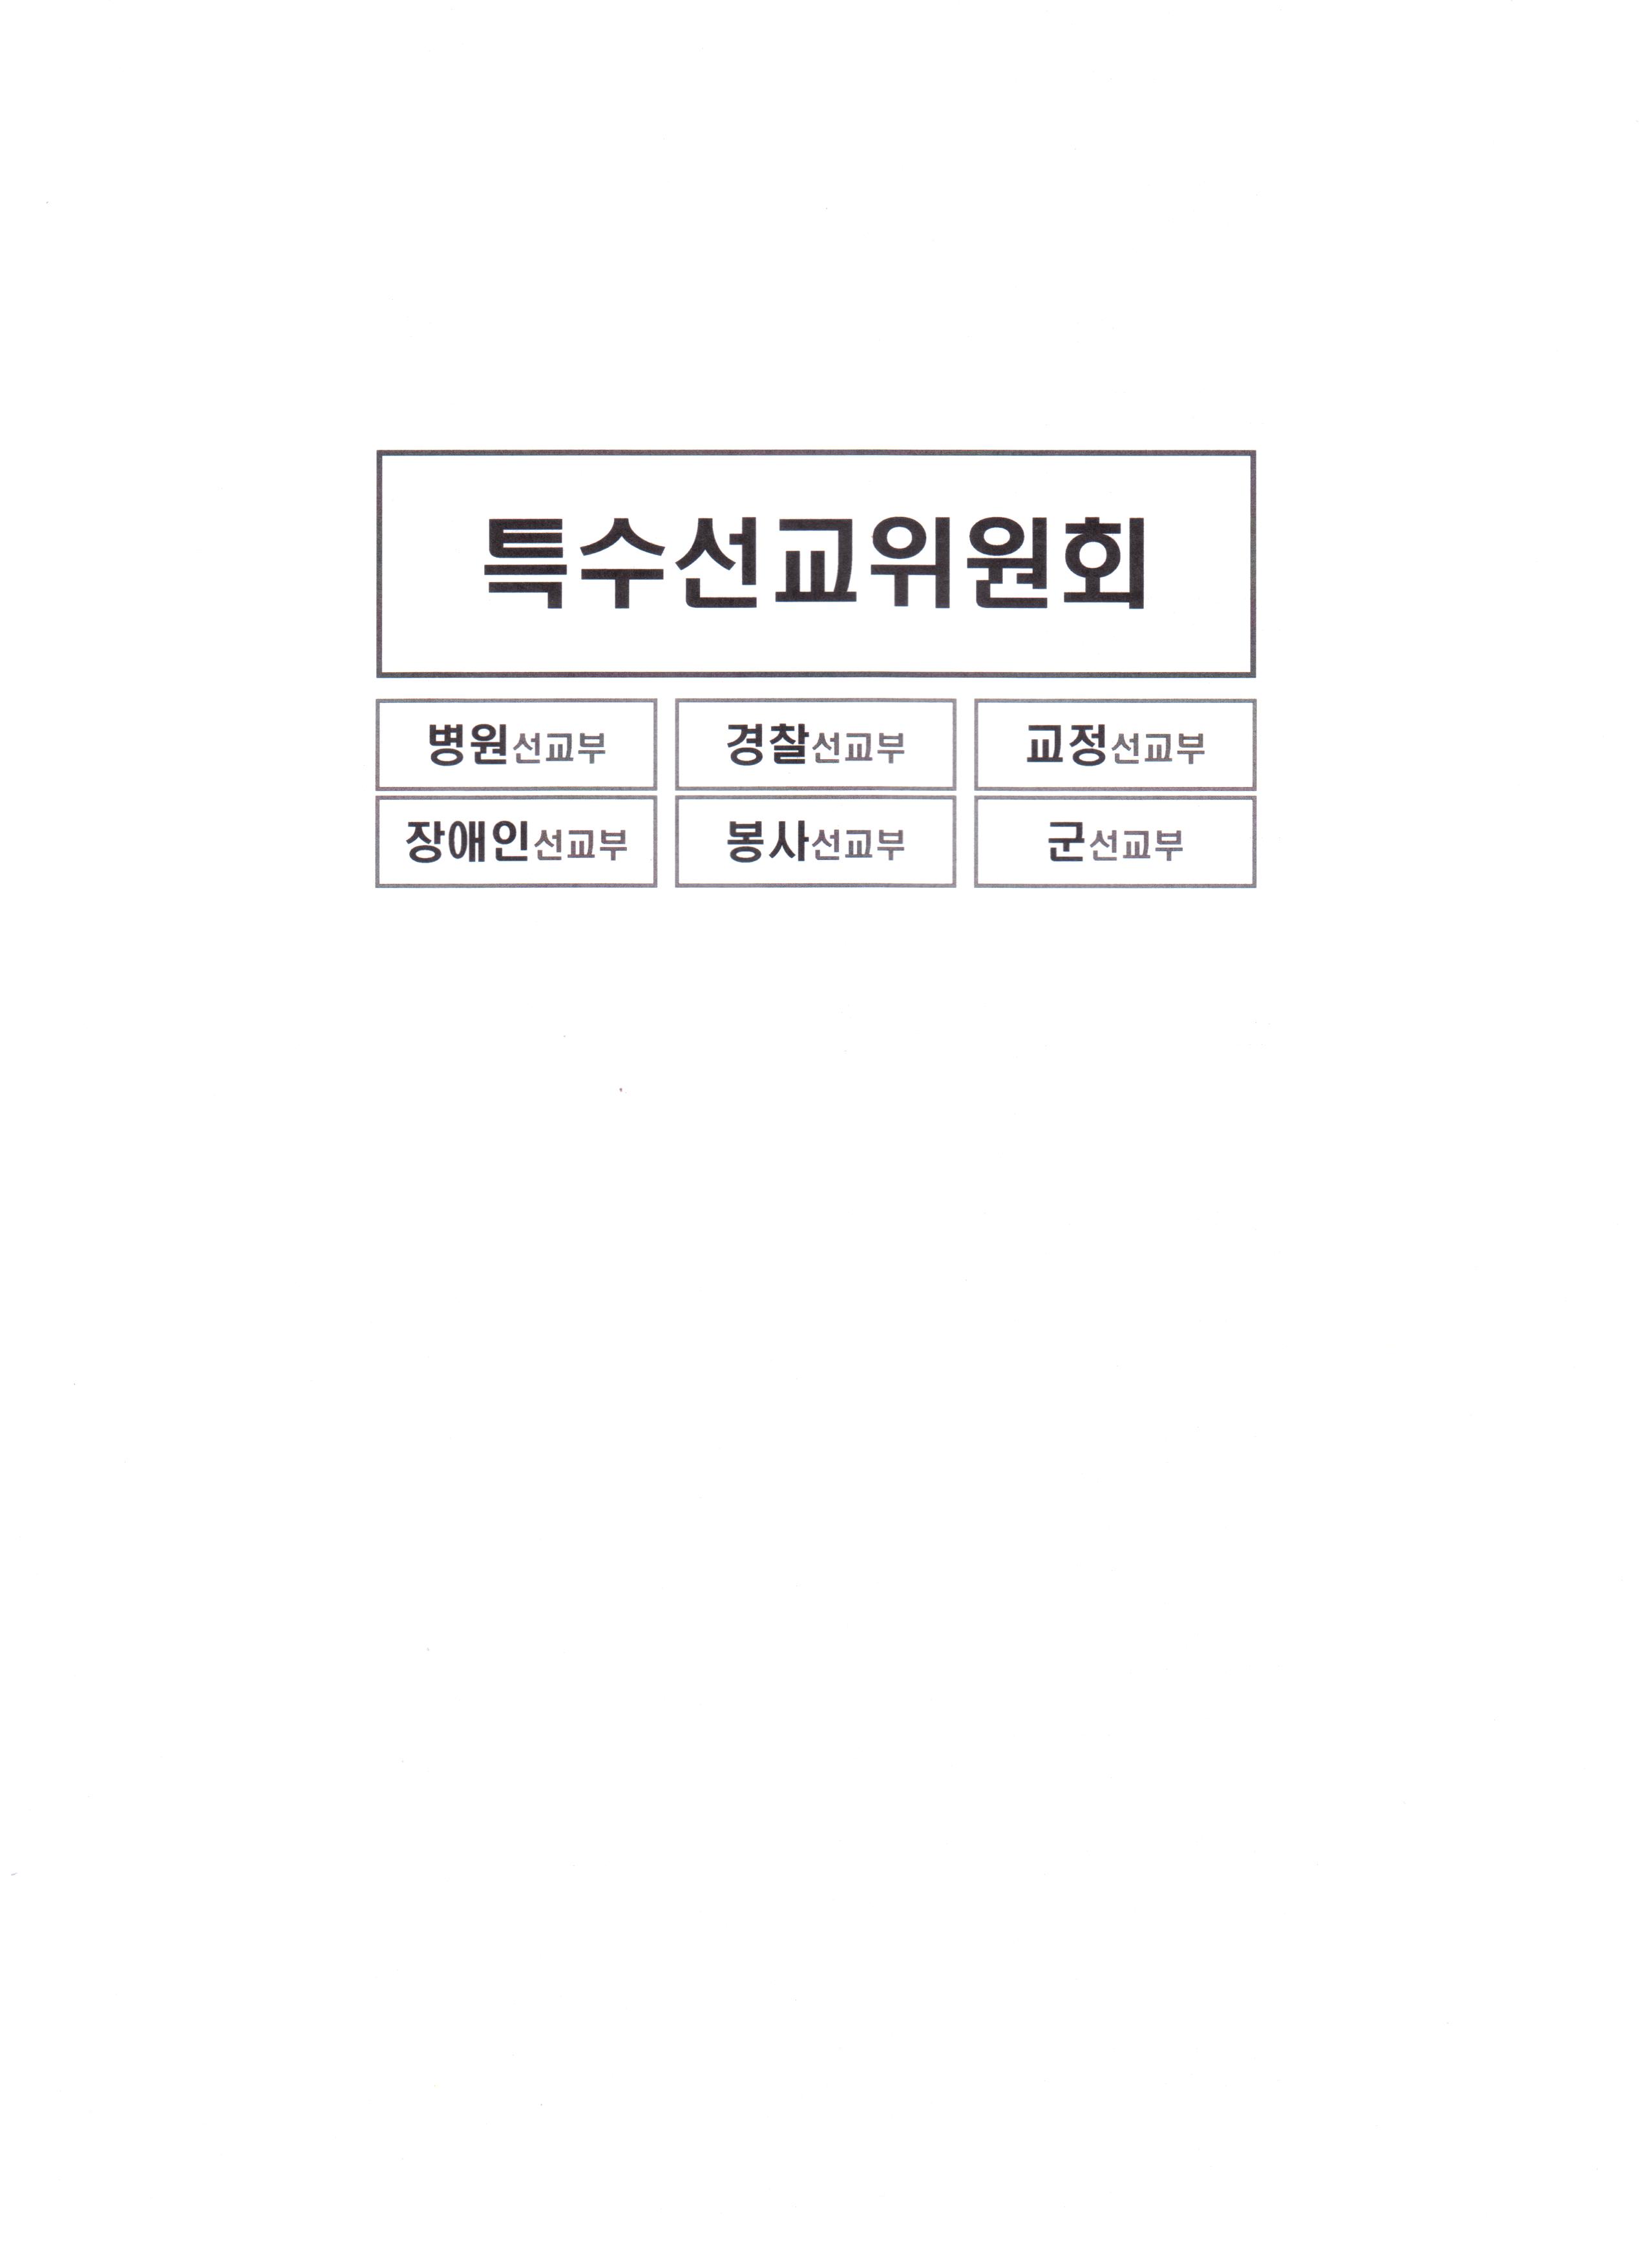 2012 특수선교위원회 정책당회자료-1.JPG